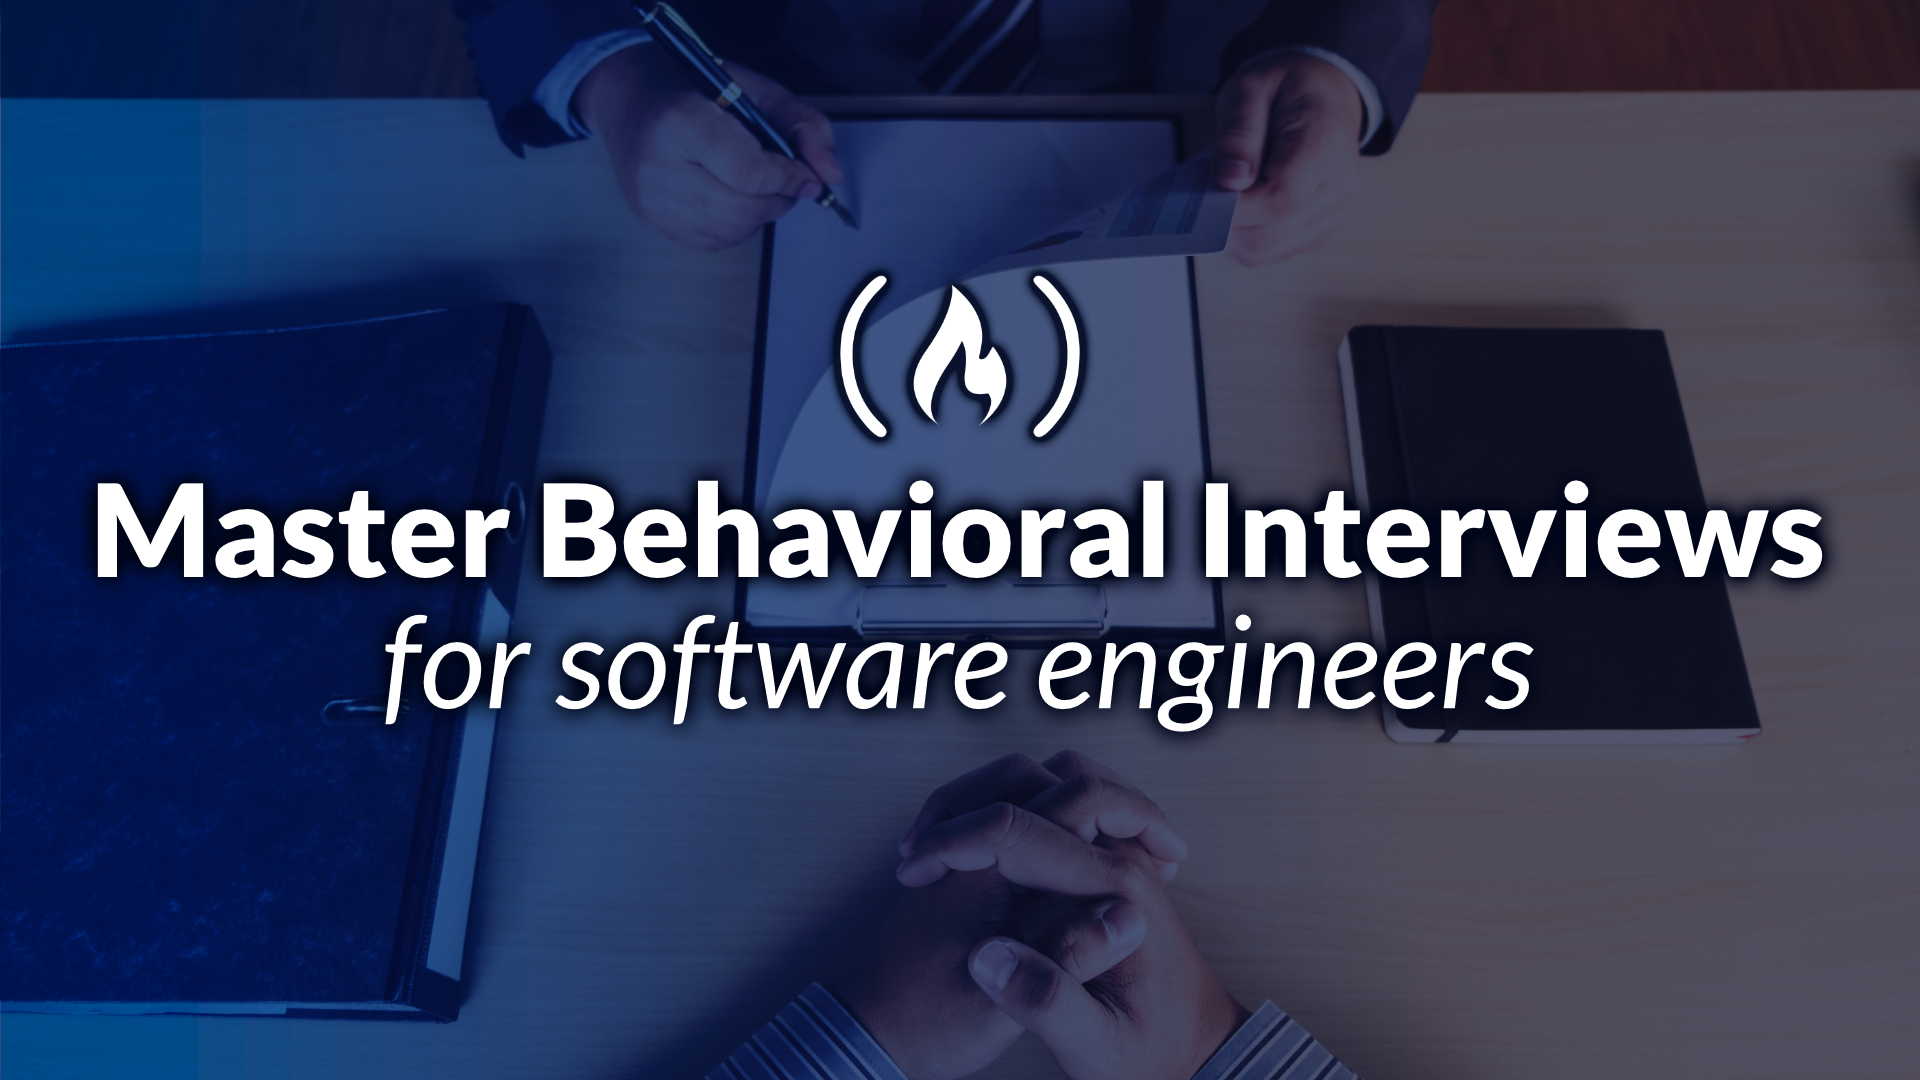 Mastering Behavioral Interviews for Software Developers